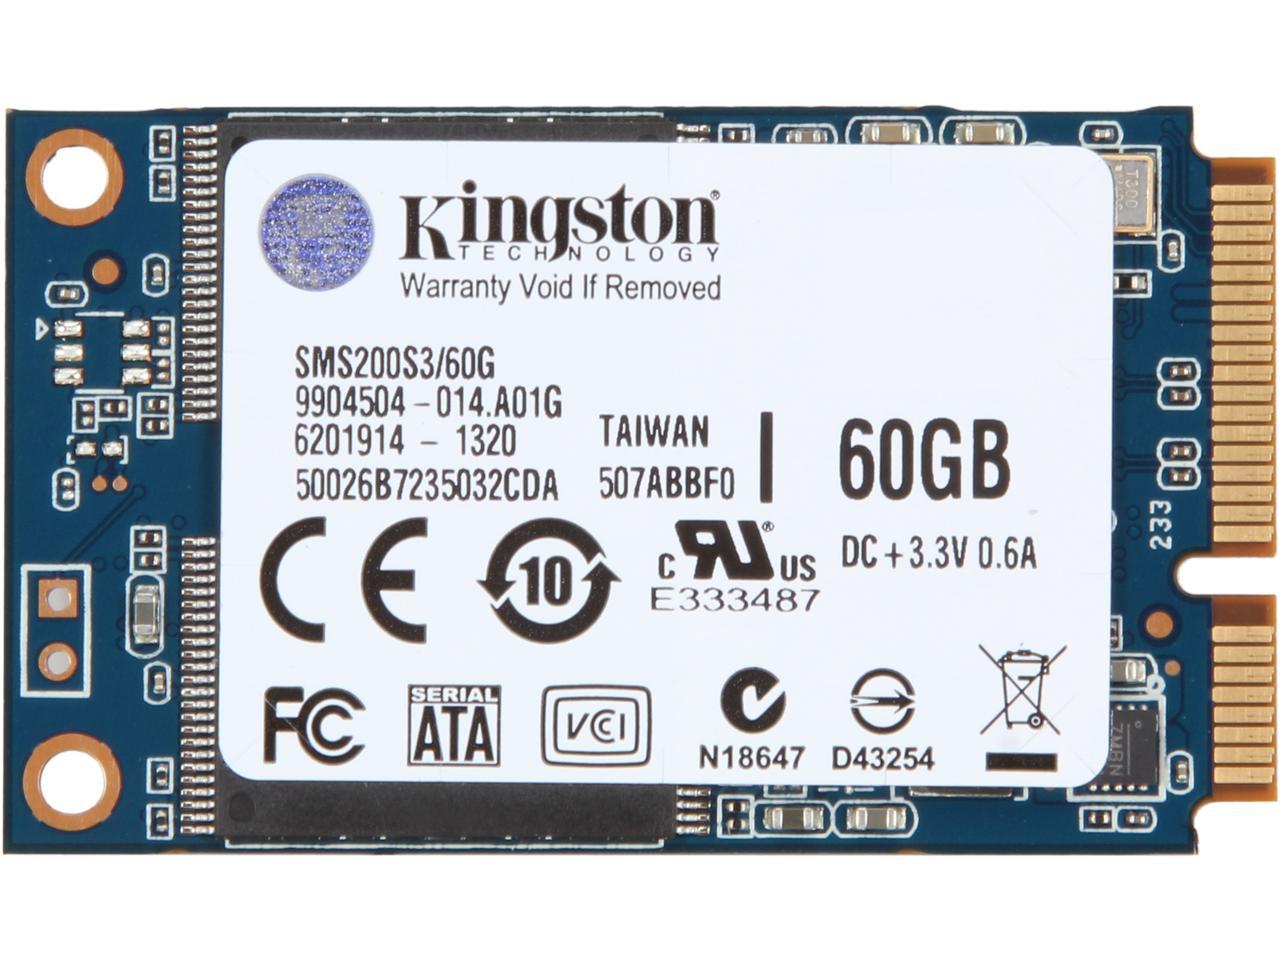 Kingston 60GB Mini-SATA (mSATA) Internal Solid State Drive (SSD)  SMS200S3/60G